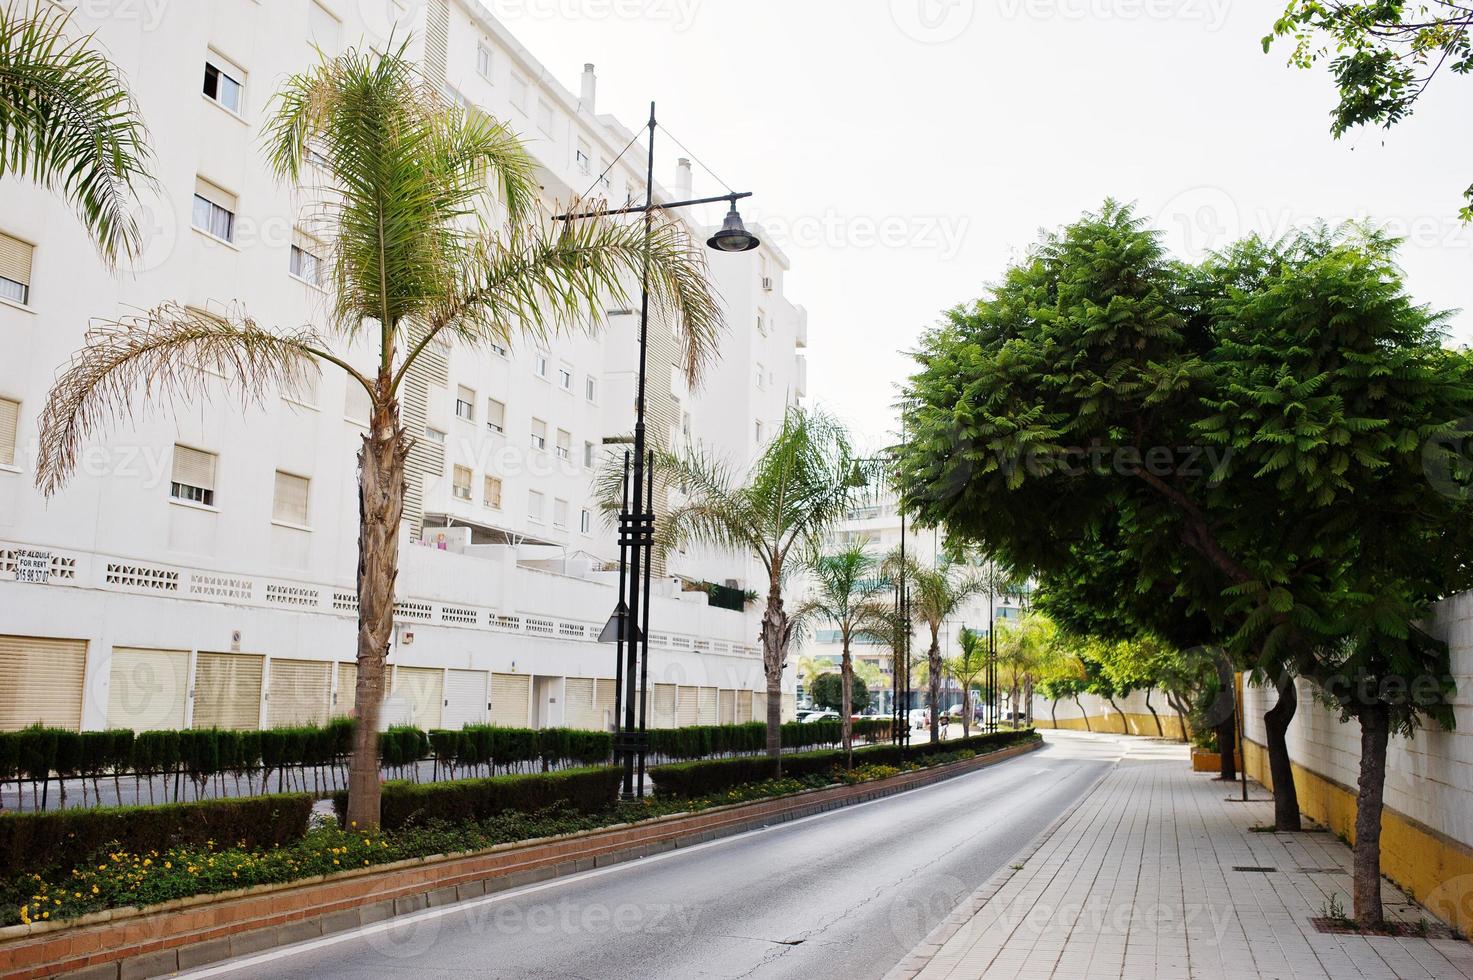 ruas com arquitetura dos edifícios da cidade resort e vegetação tropical. foto